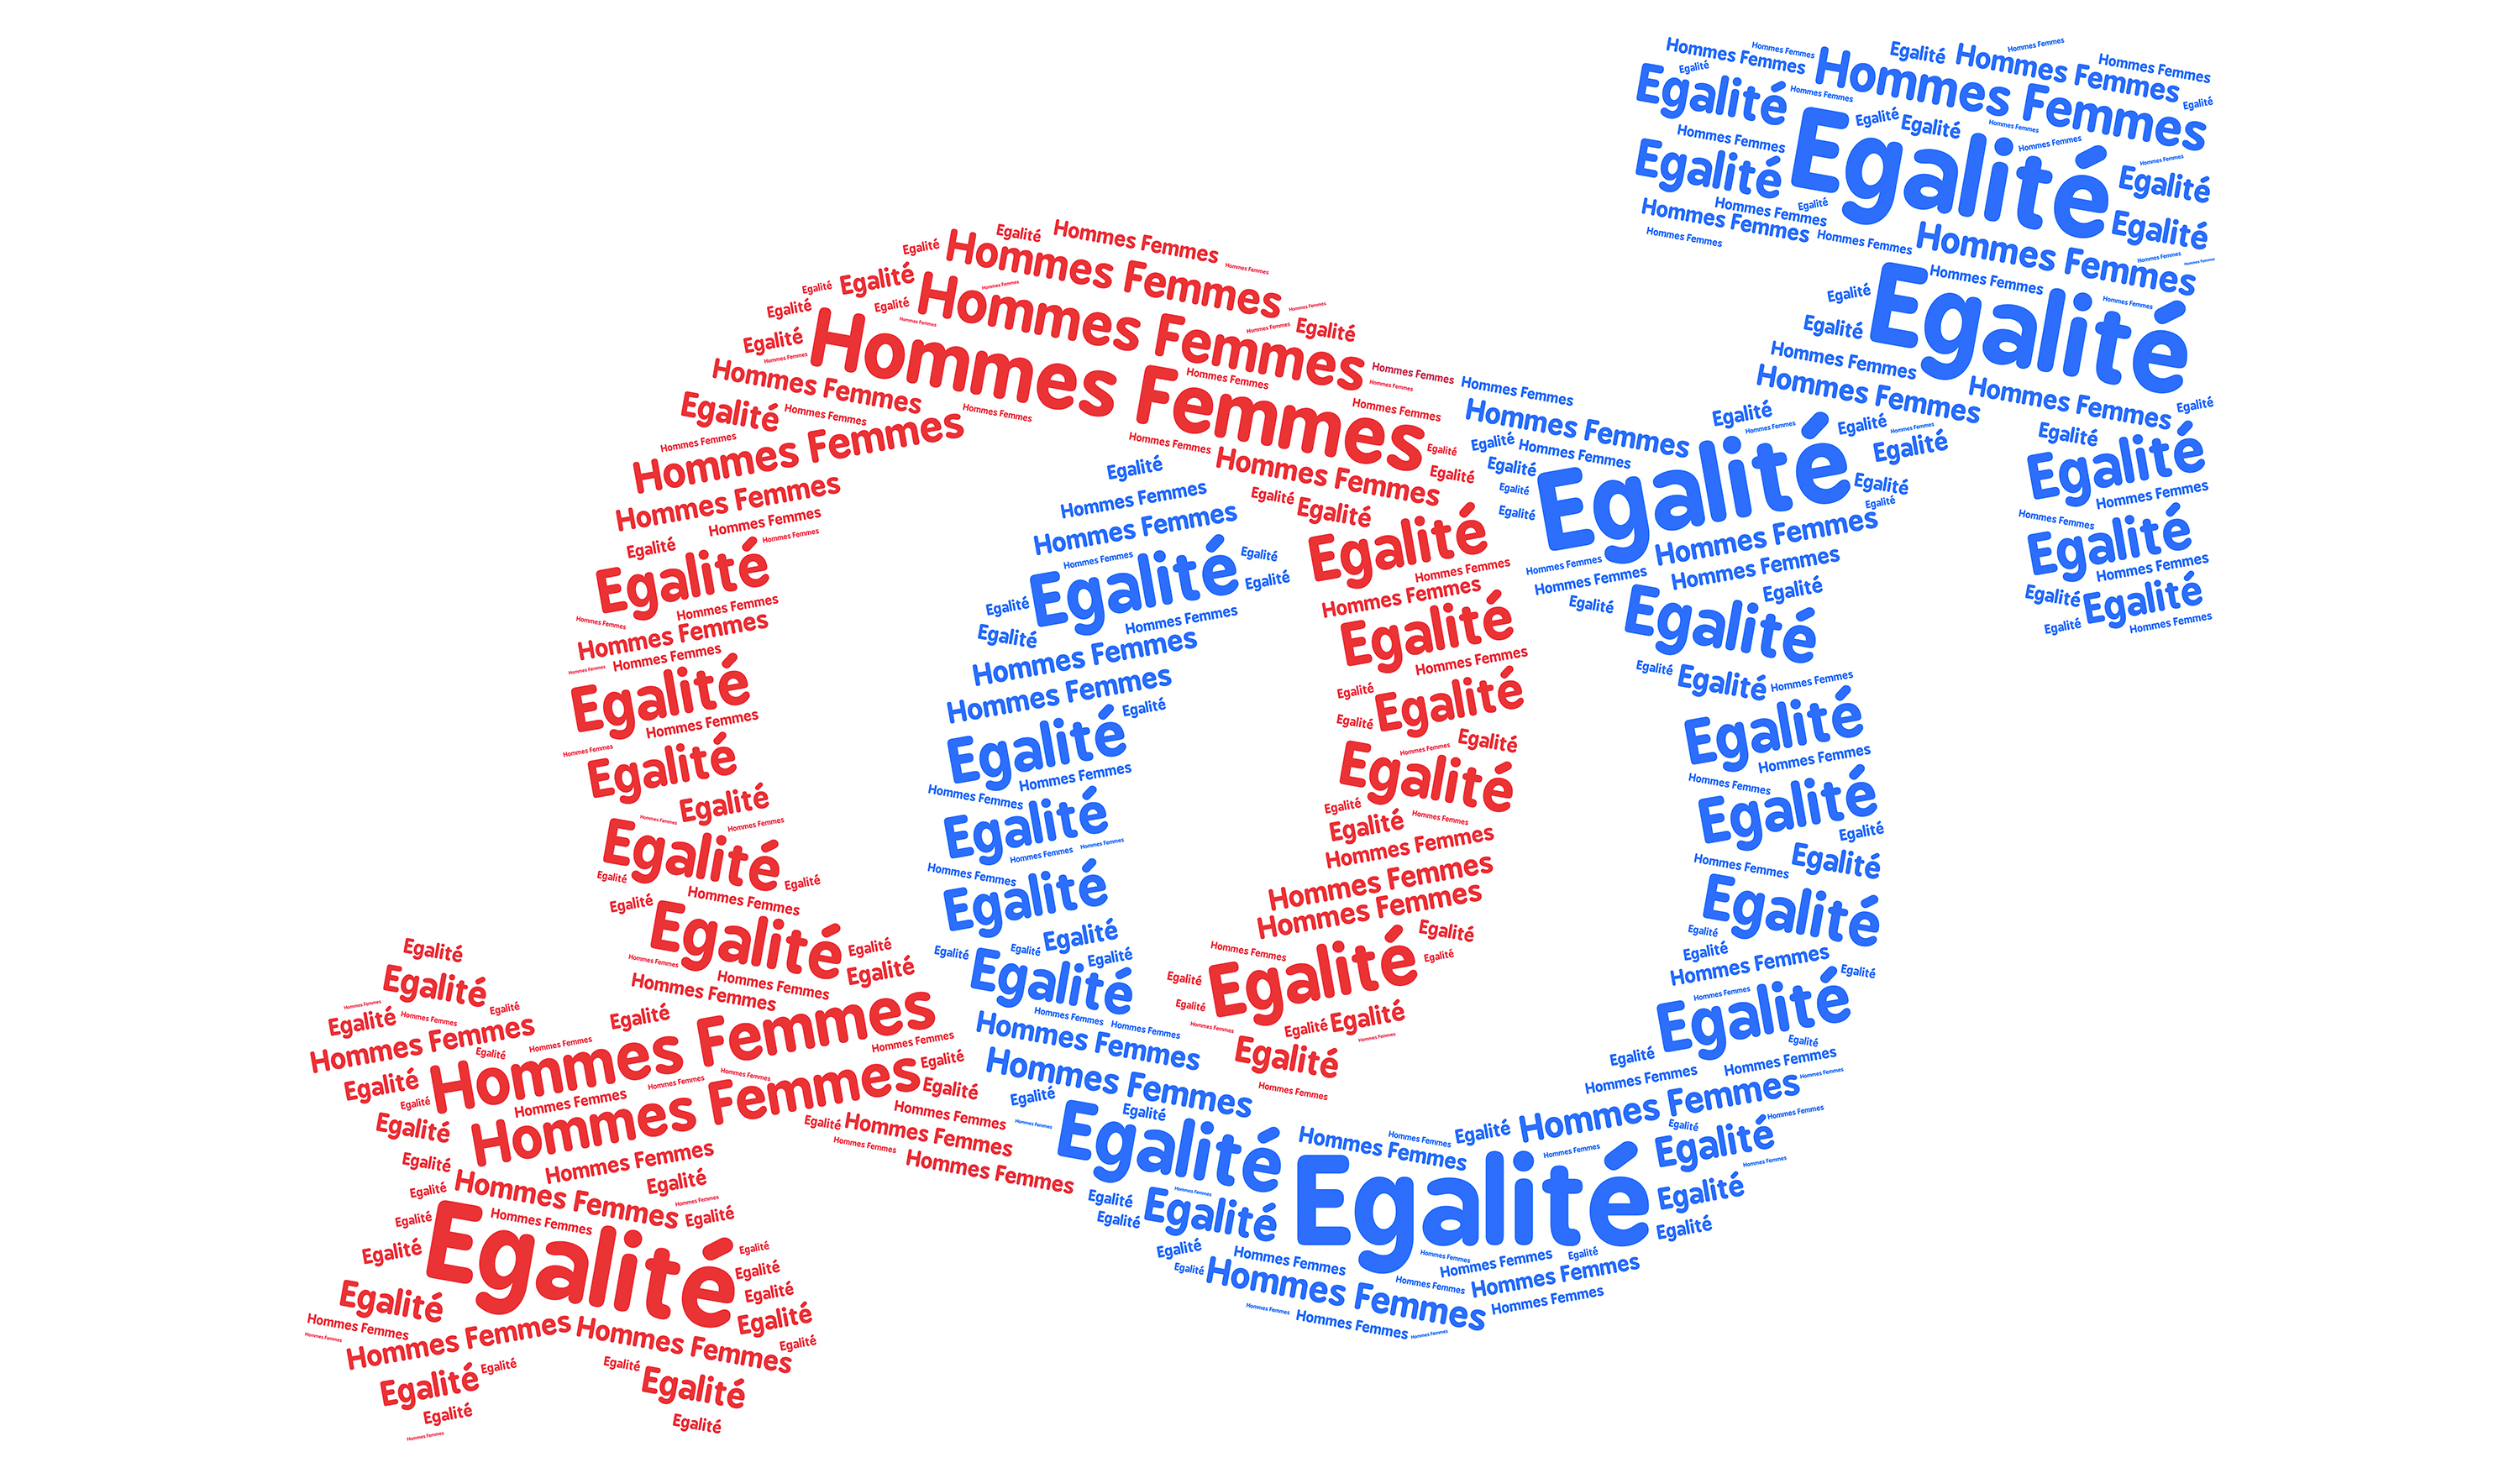 Index de l' égalité professionnelle hommes-femmes de l'OFFICE64 : 94/100